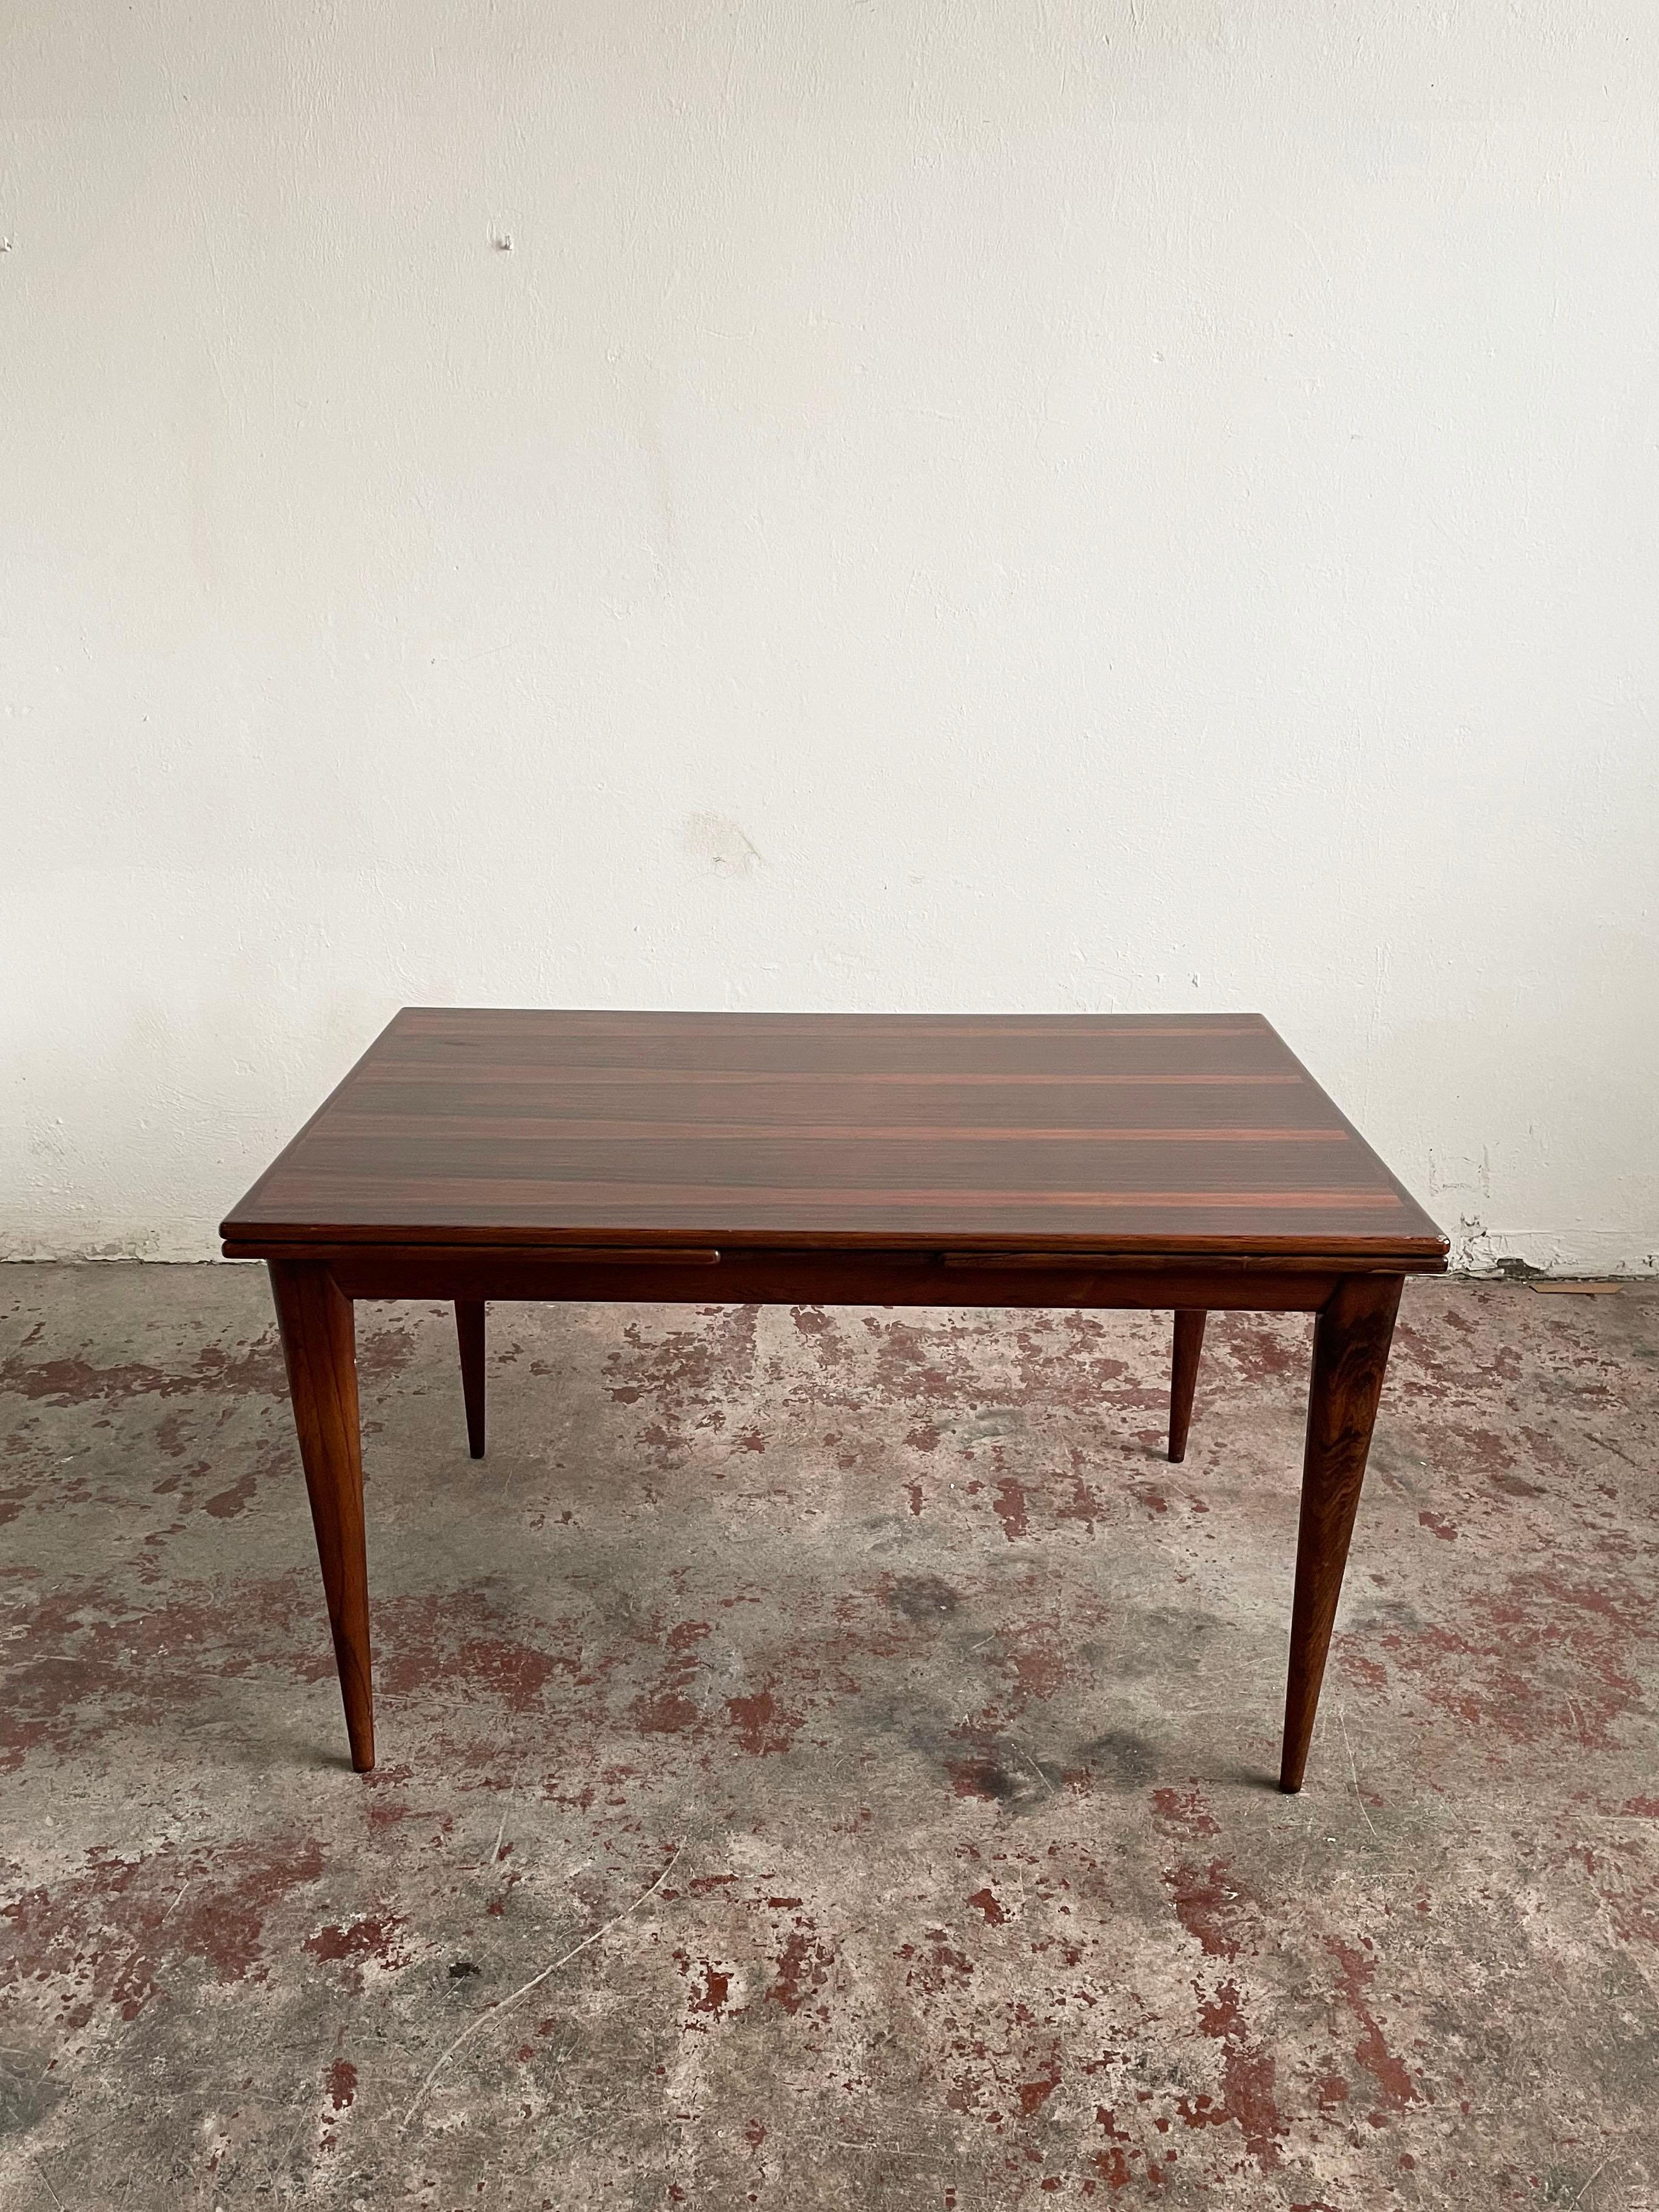 Cette table de salle à manger en bois de rose, modèle 254, a été conçue par Niels O. Møller et produite par I.L.Møllers Møbelfabrik au Danemark dans les années 1950.

Design/One Modern Icone Scandinavian Mid-Century Modern

La pièce mesure de 139 à